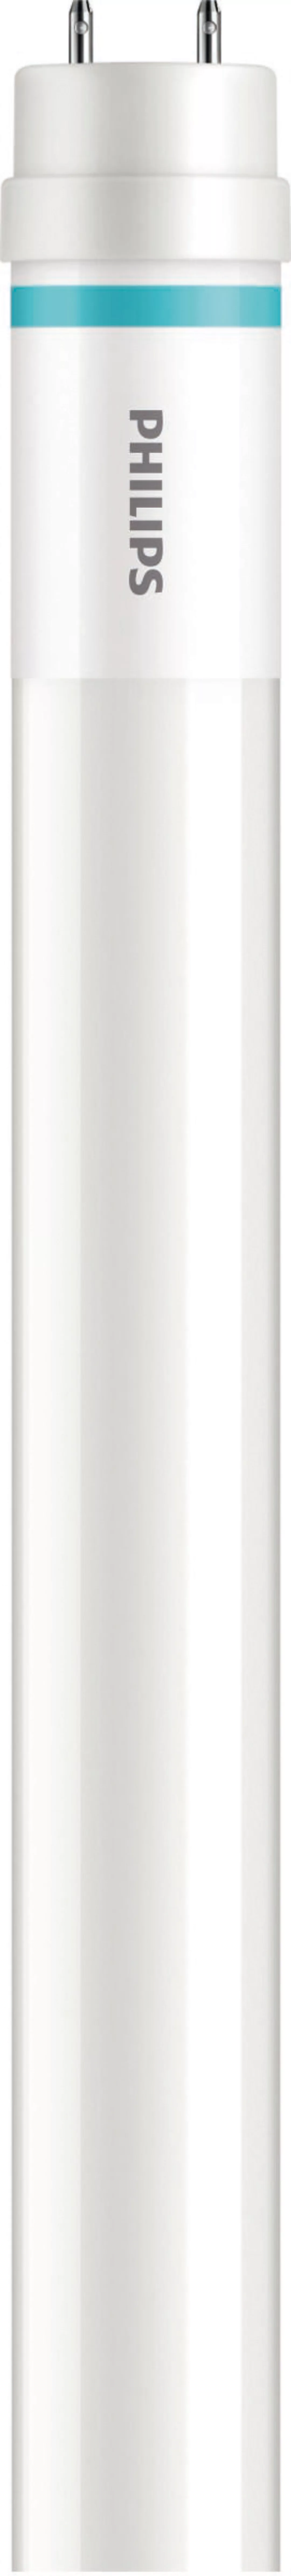 Philips Lighting LED-Tube 1200mm HO 14W 865 T8 MLEDtubeVLE#64689900 günstig online kaufen